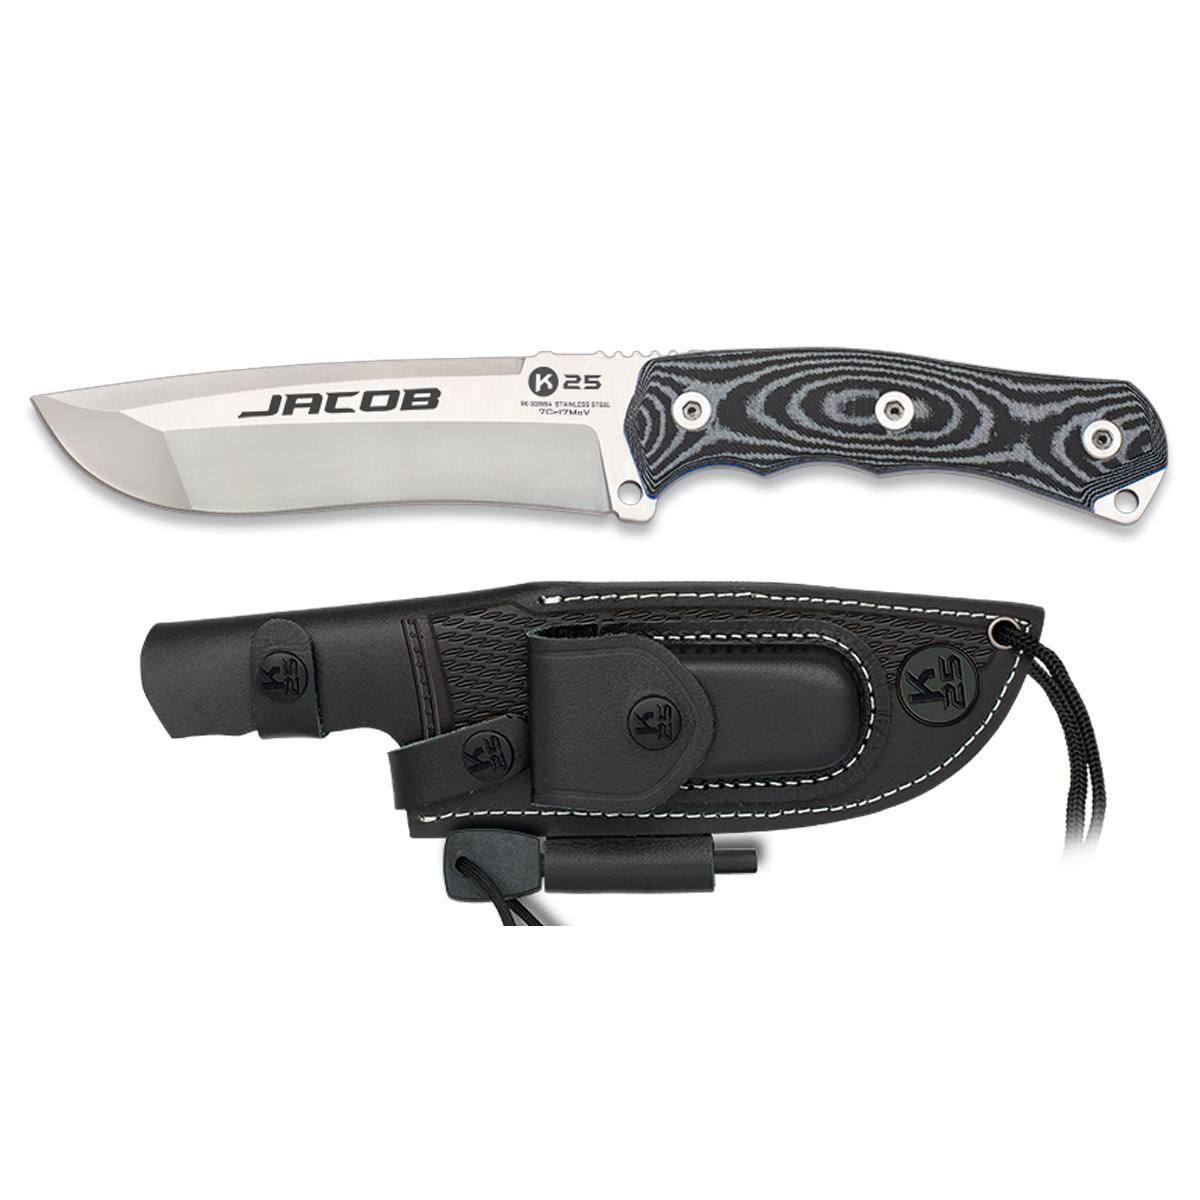 Cuchillo Tactico K25 G10 / CNC  JACOB